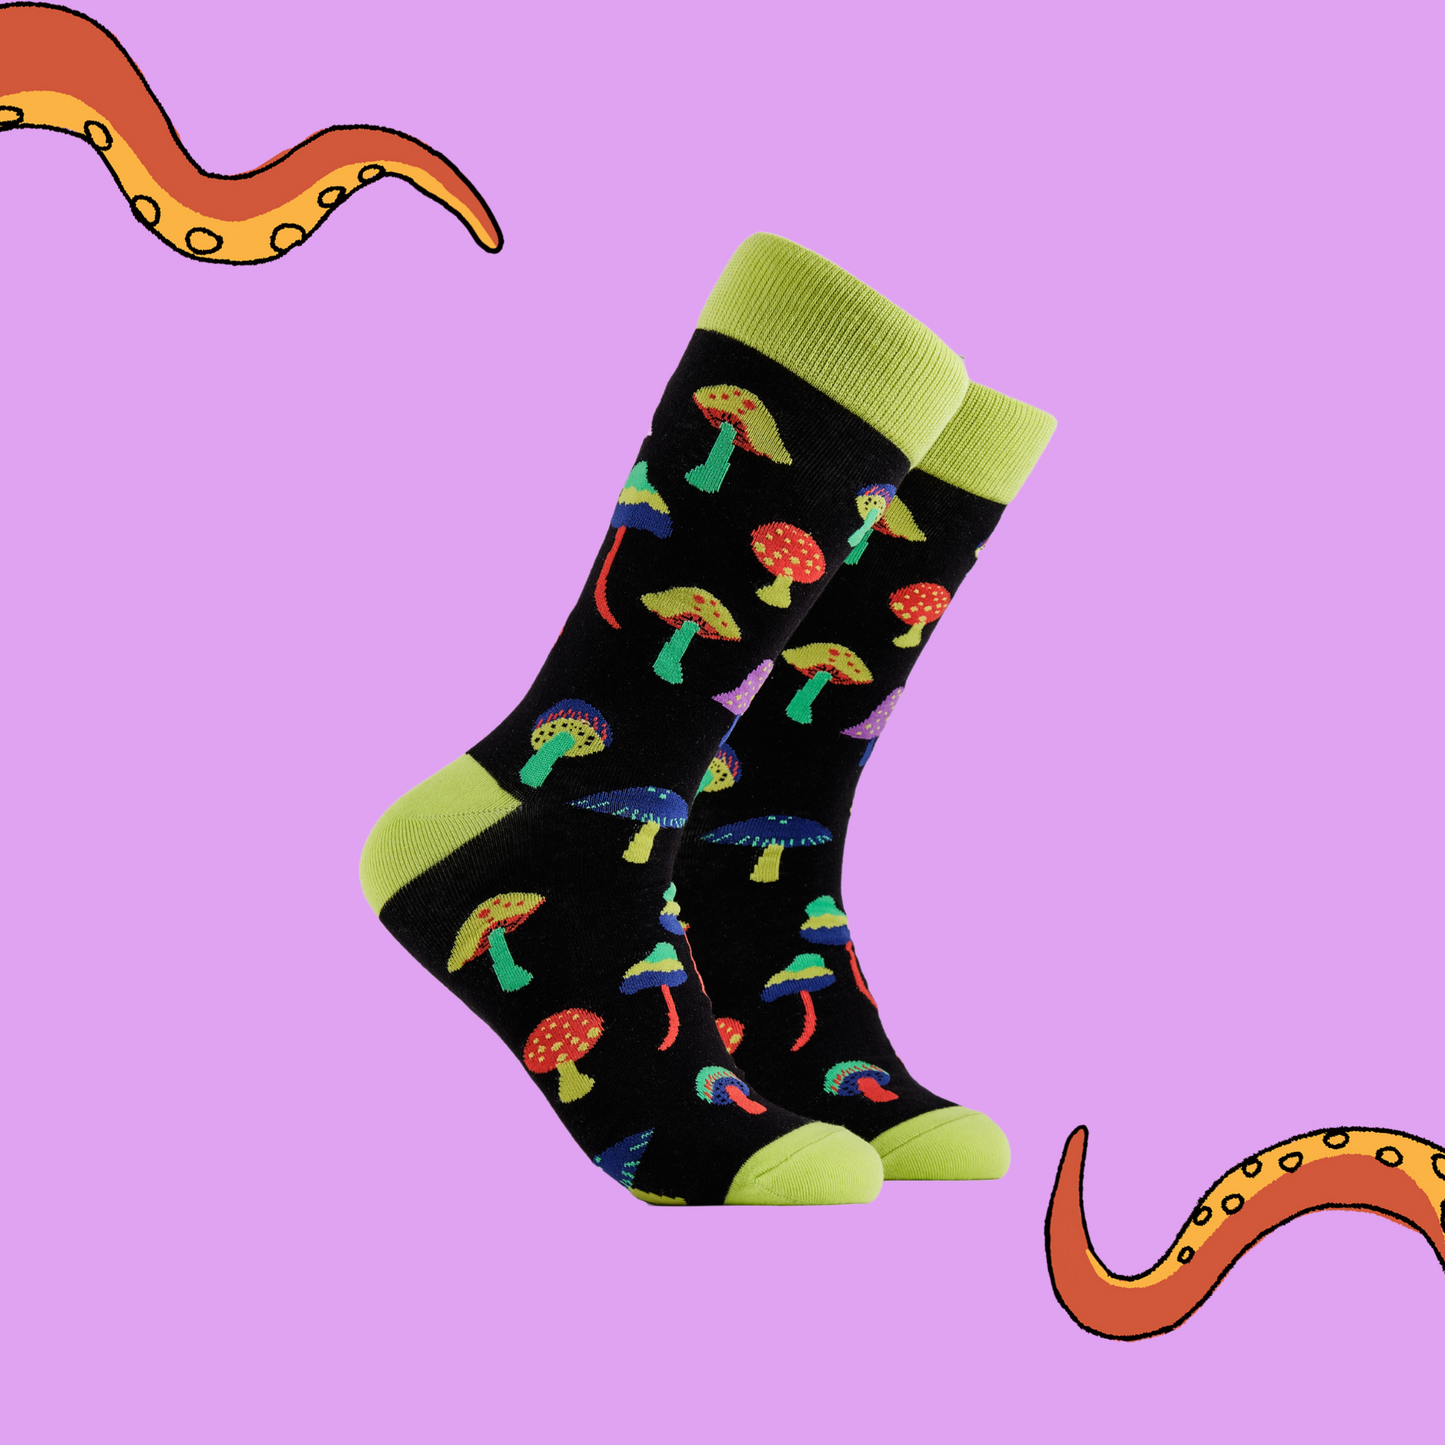 A pair of socks depicting magic mushrooms. Black legs, bright yellow cuff, heel and toe.